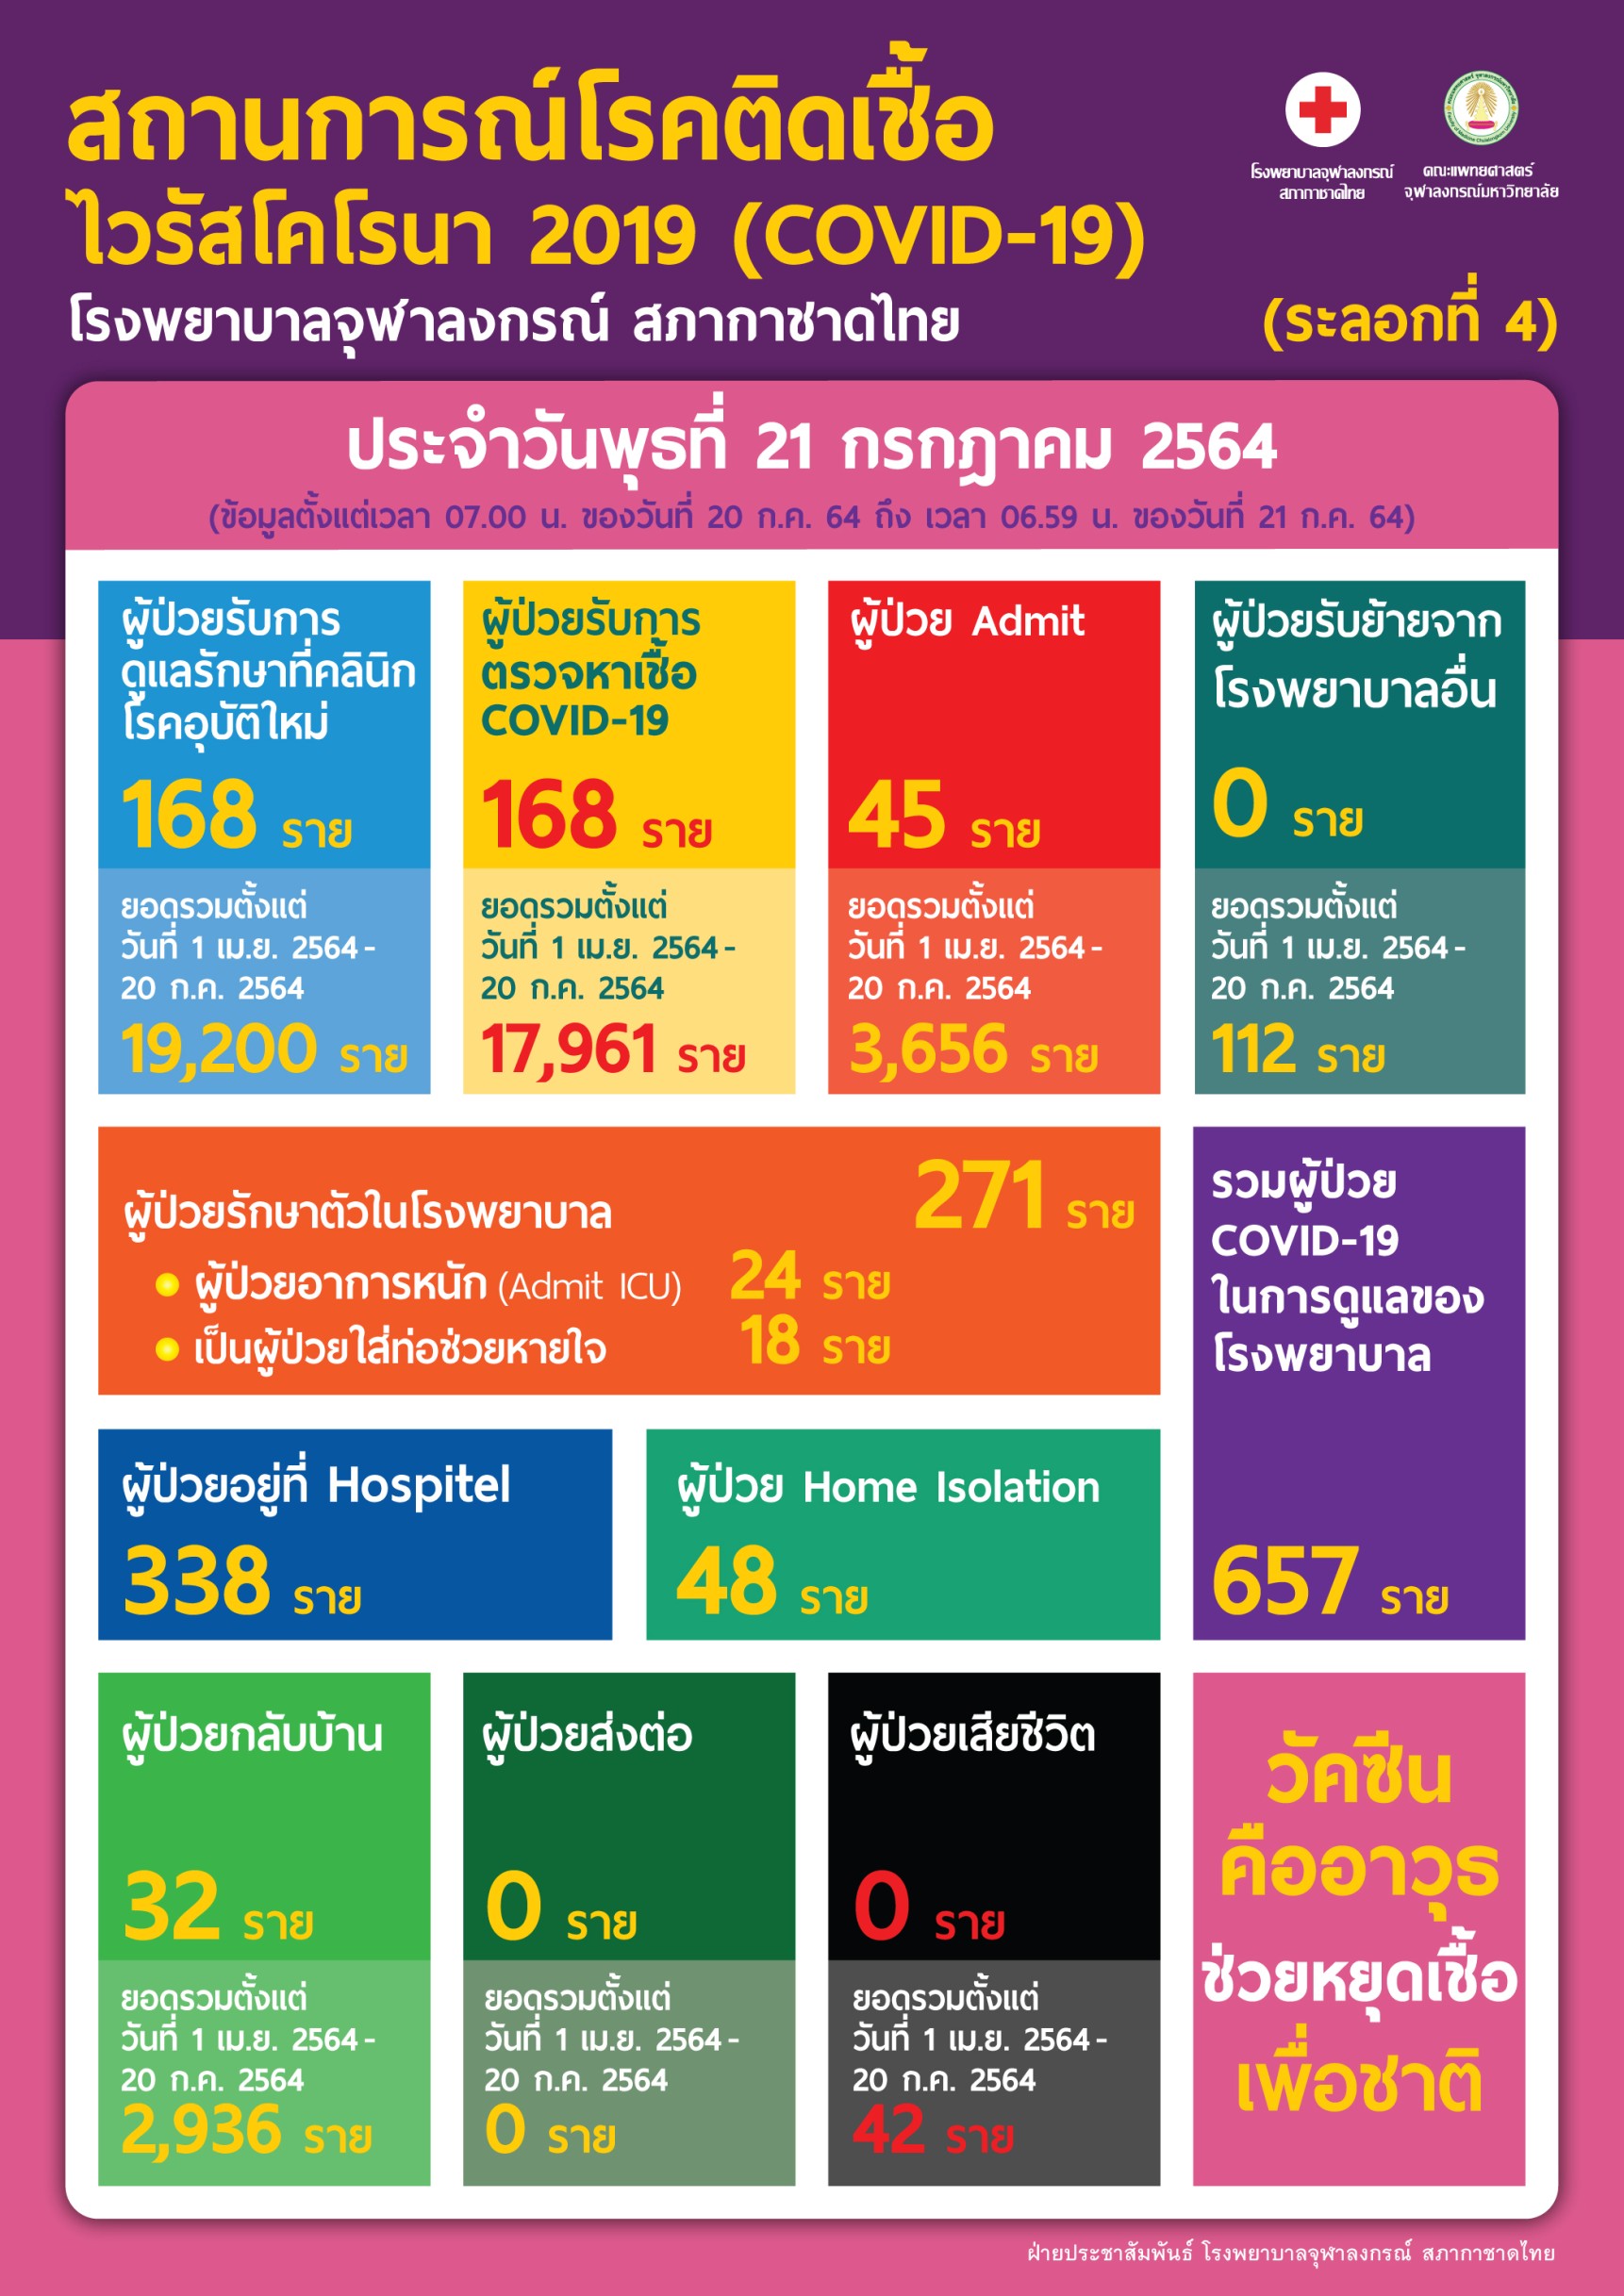 สถานการณ์โรคติดเชื้อไวรัสโคโรนา 2019 (COVID-19) (ระลอกที่ 4) โรงพยาบาลจุฬาลงกรณ์ สภากาชาดไทย ประจำวันพุธที่ 21 กรกฎาคม 2564